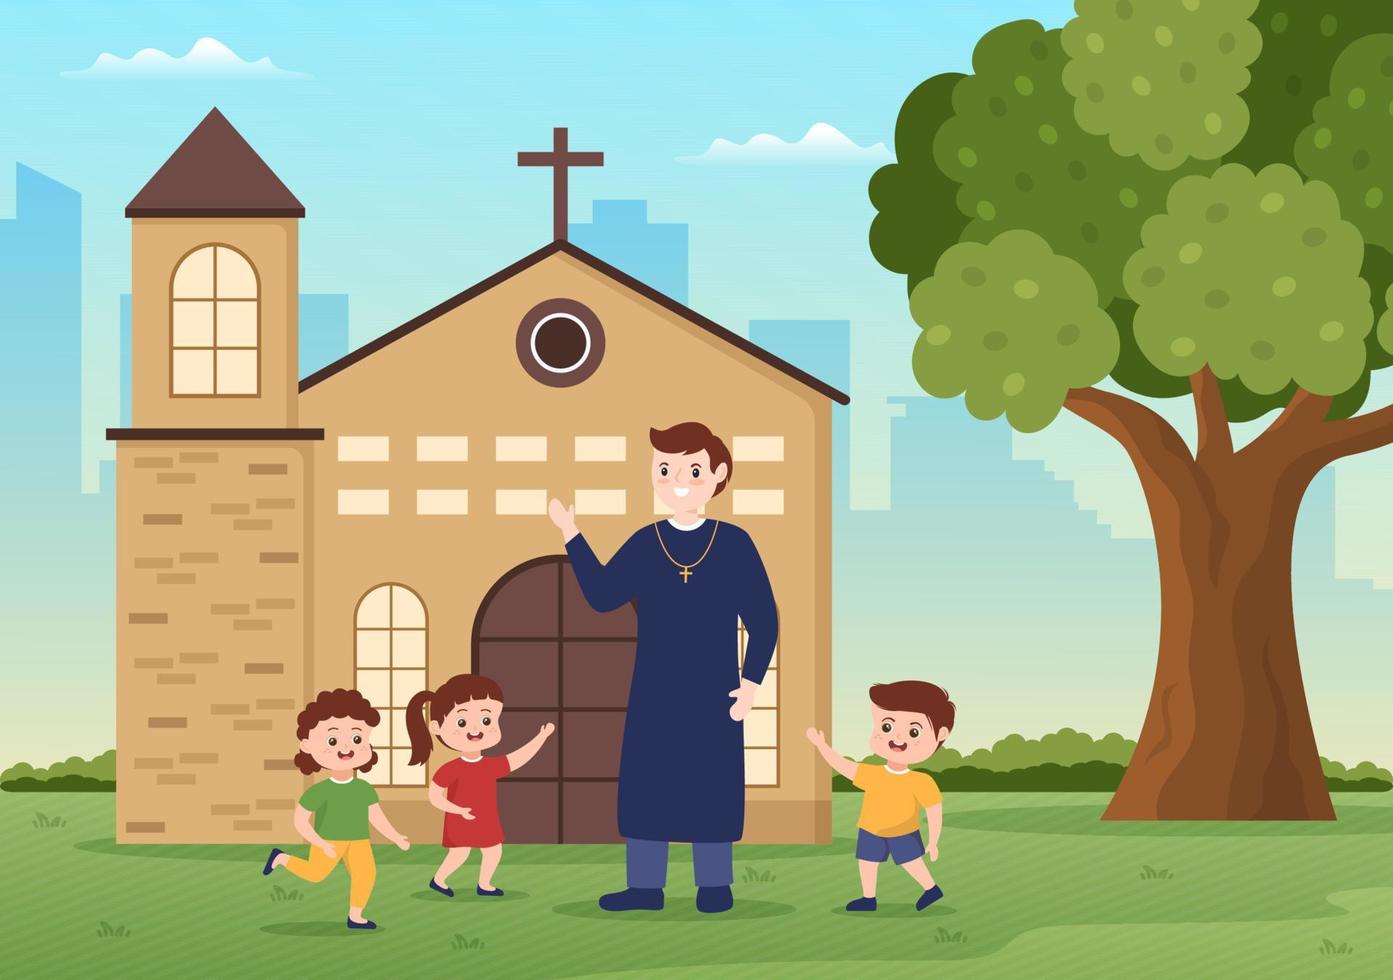 el pastor está jugando con algunos niños frente a la iglesia católica interna en una ilustración de plantilla dibujada a mano de caricatura plana vector